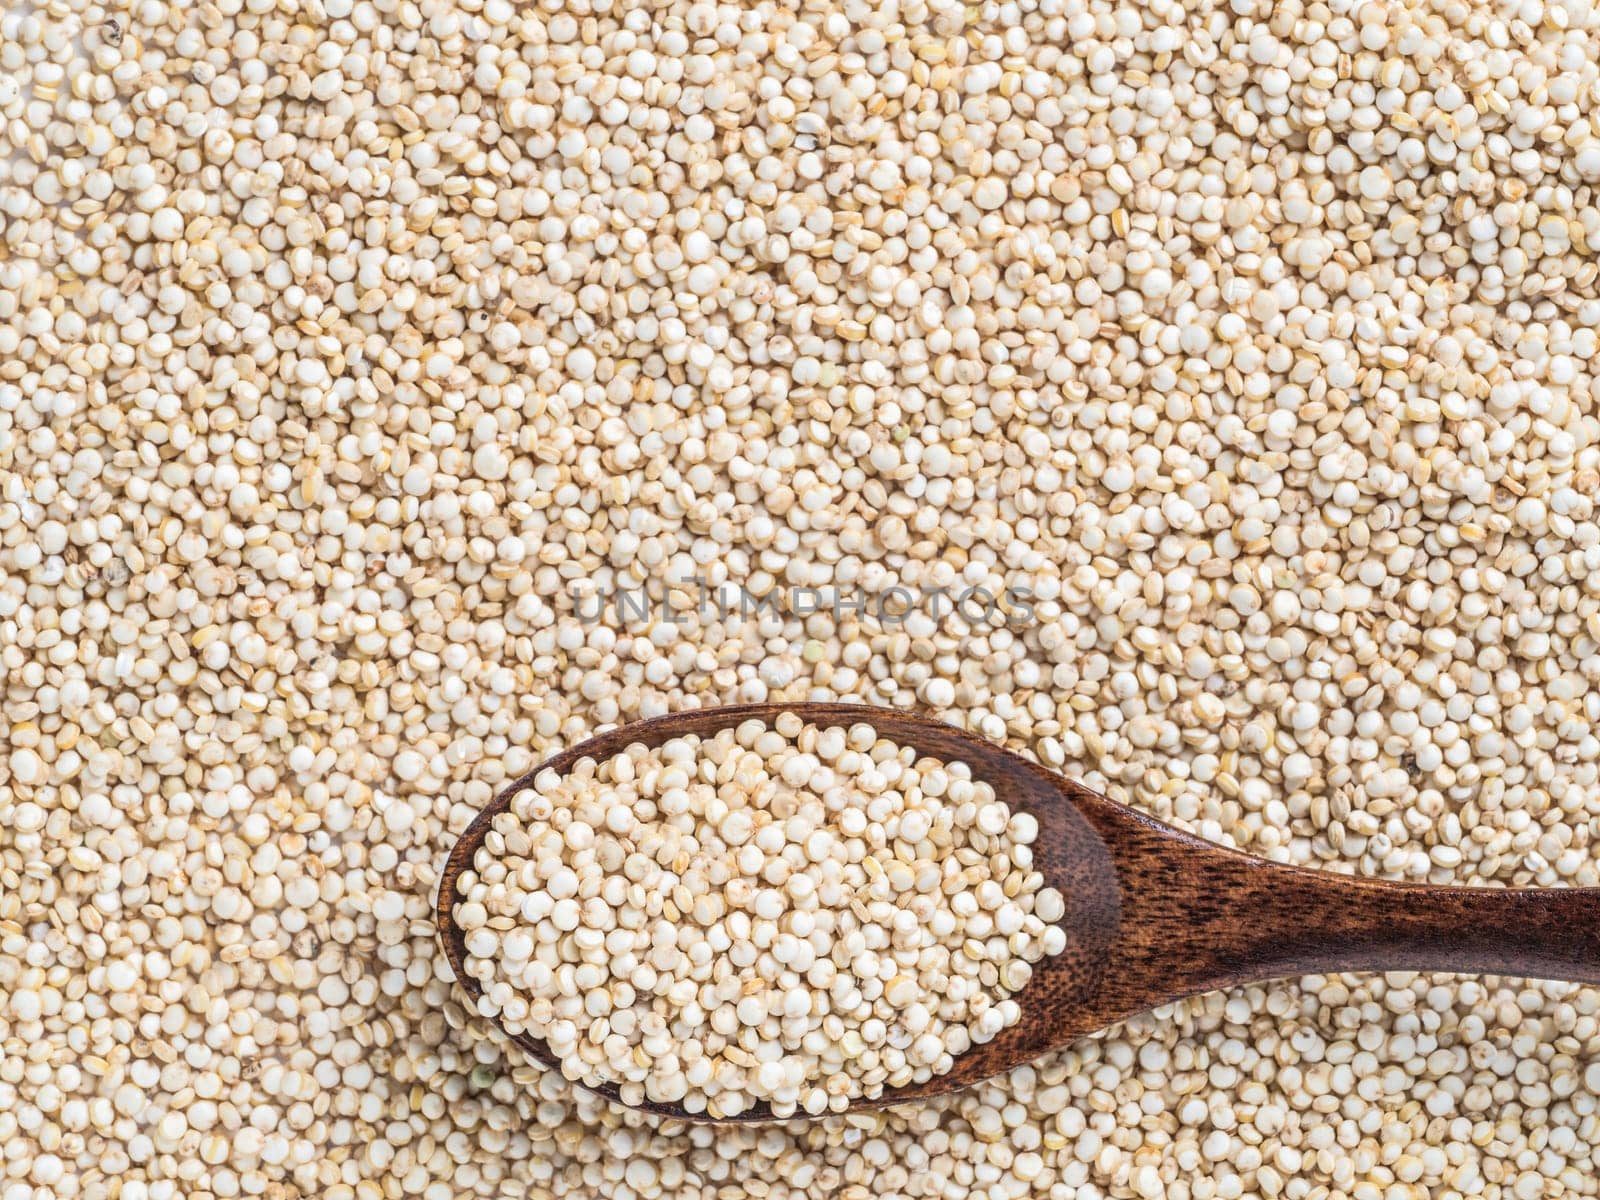 Grain of quinoaб copy space by fascinadora